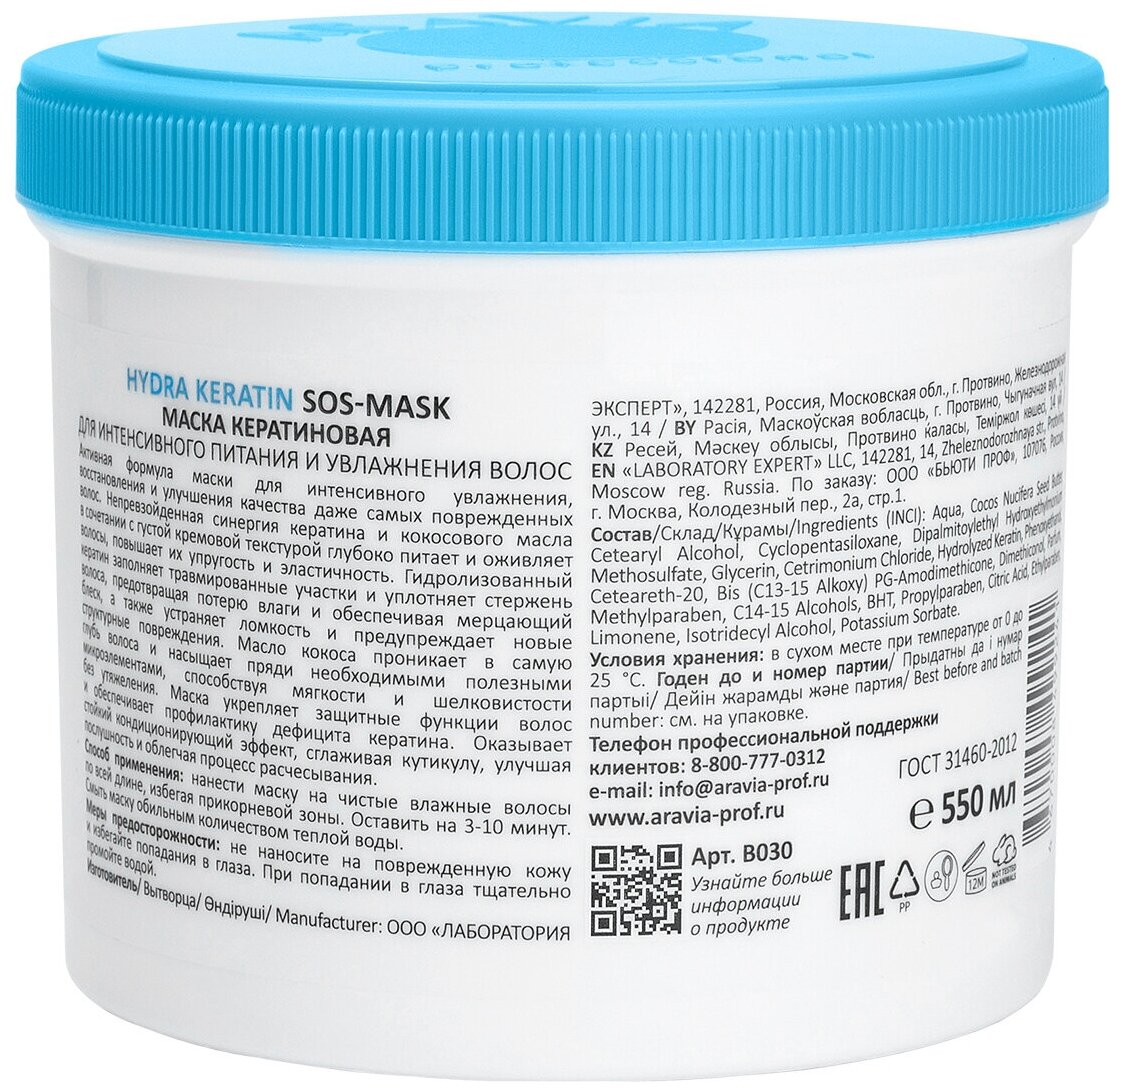 Маска кератиновая для интенсивного питания и увлажнения волос Hyrda Keratin SOS-Mask 550 мл